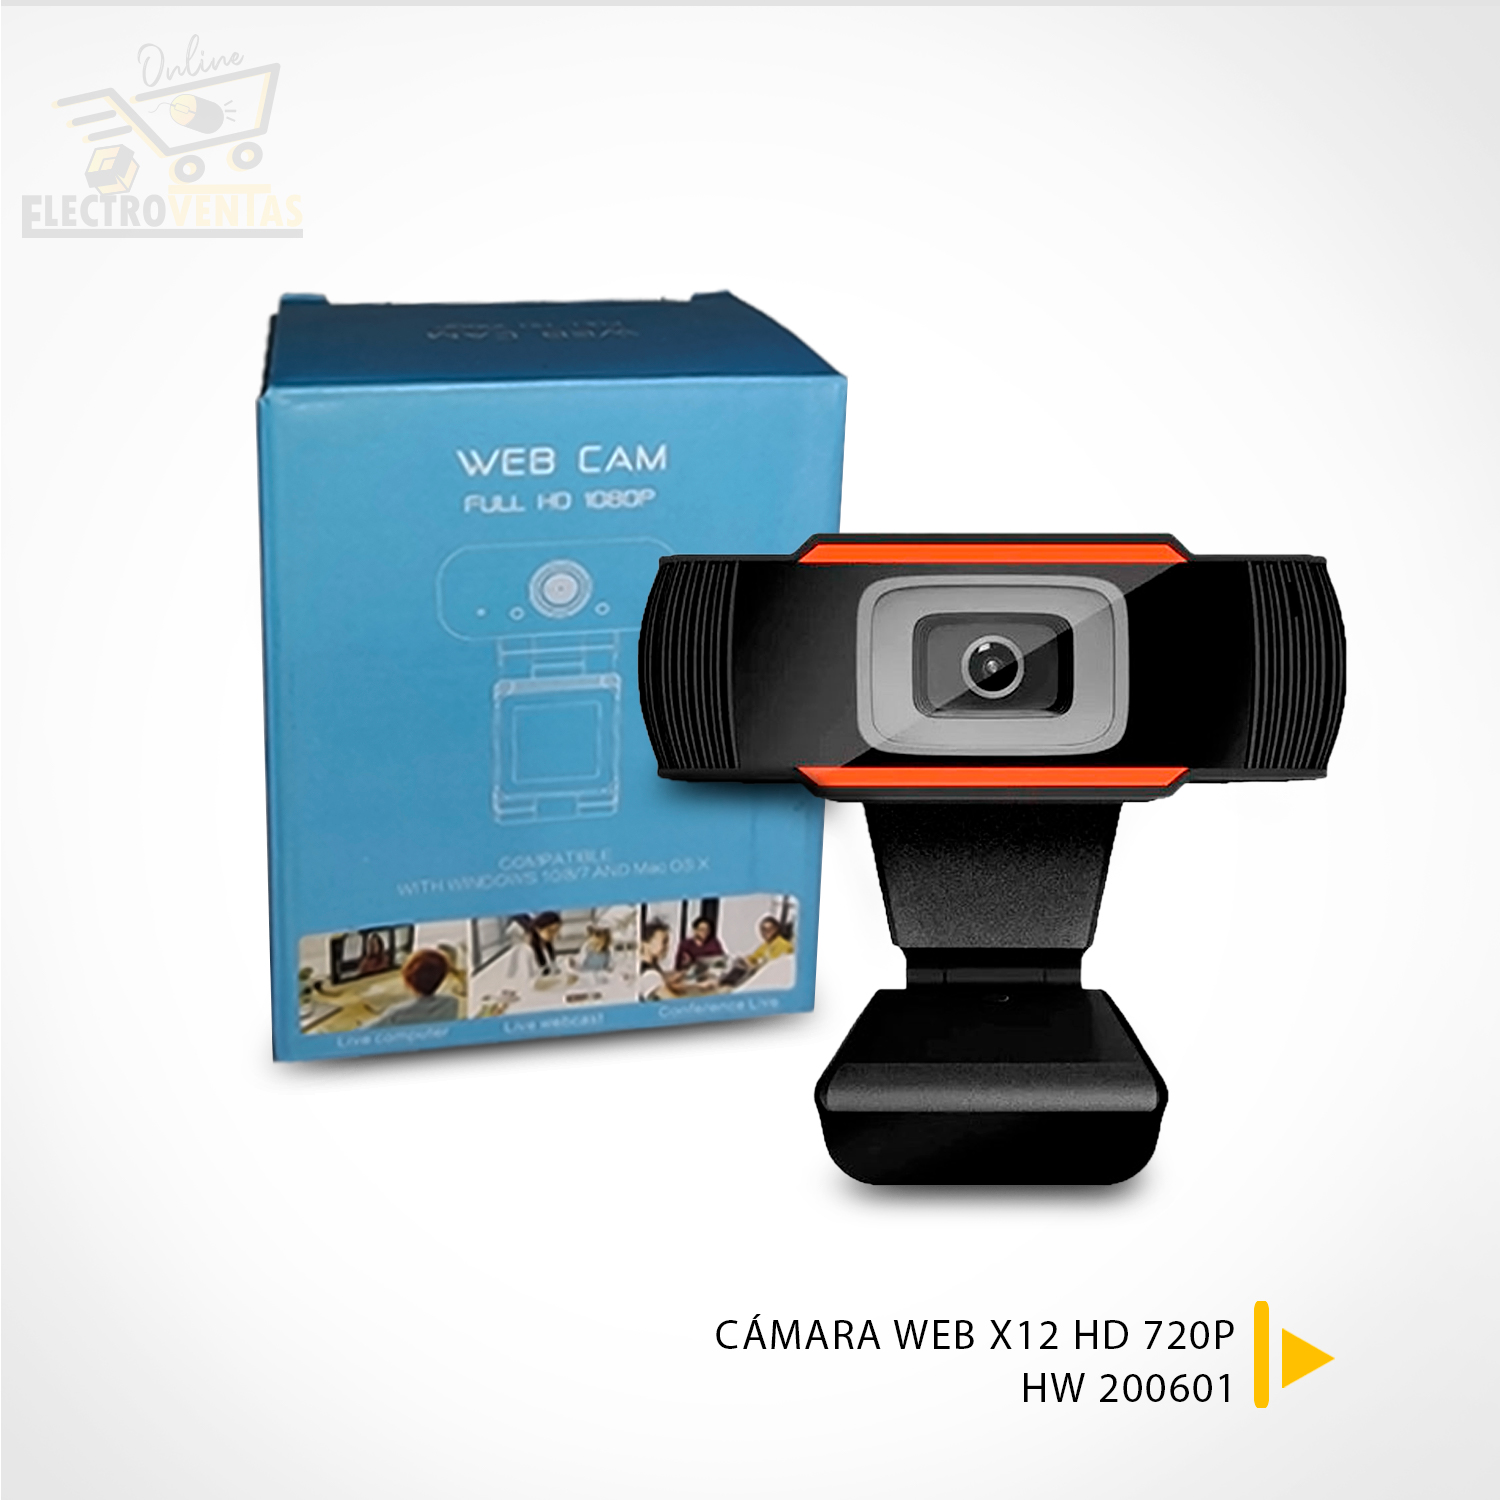 HW 200601” CAMARA WEB X12 HD – VENTAS POR MAYOR BOLIVIA